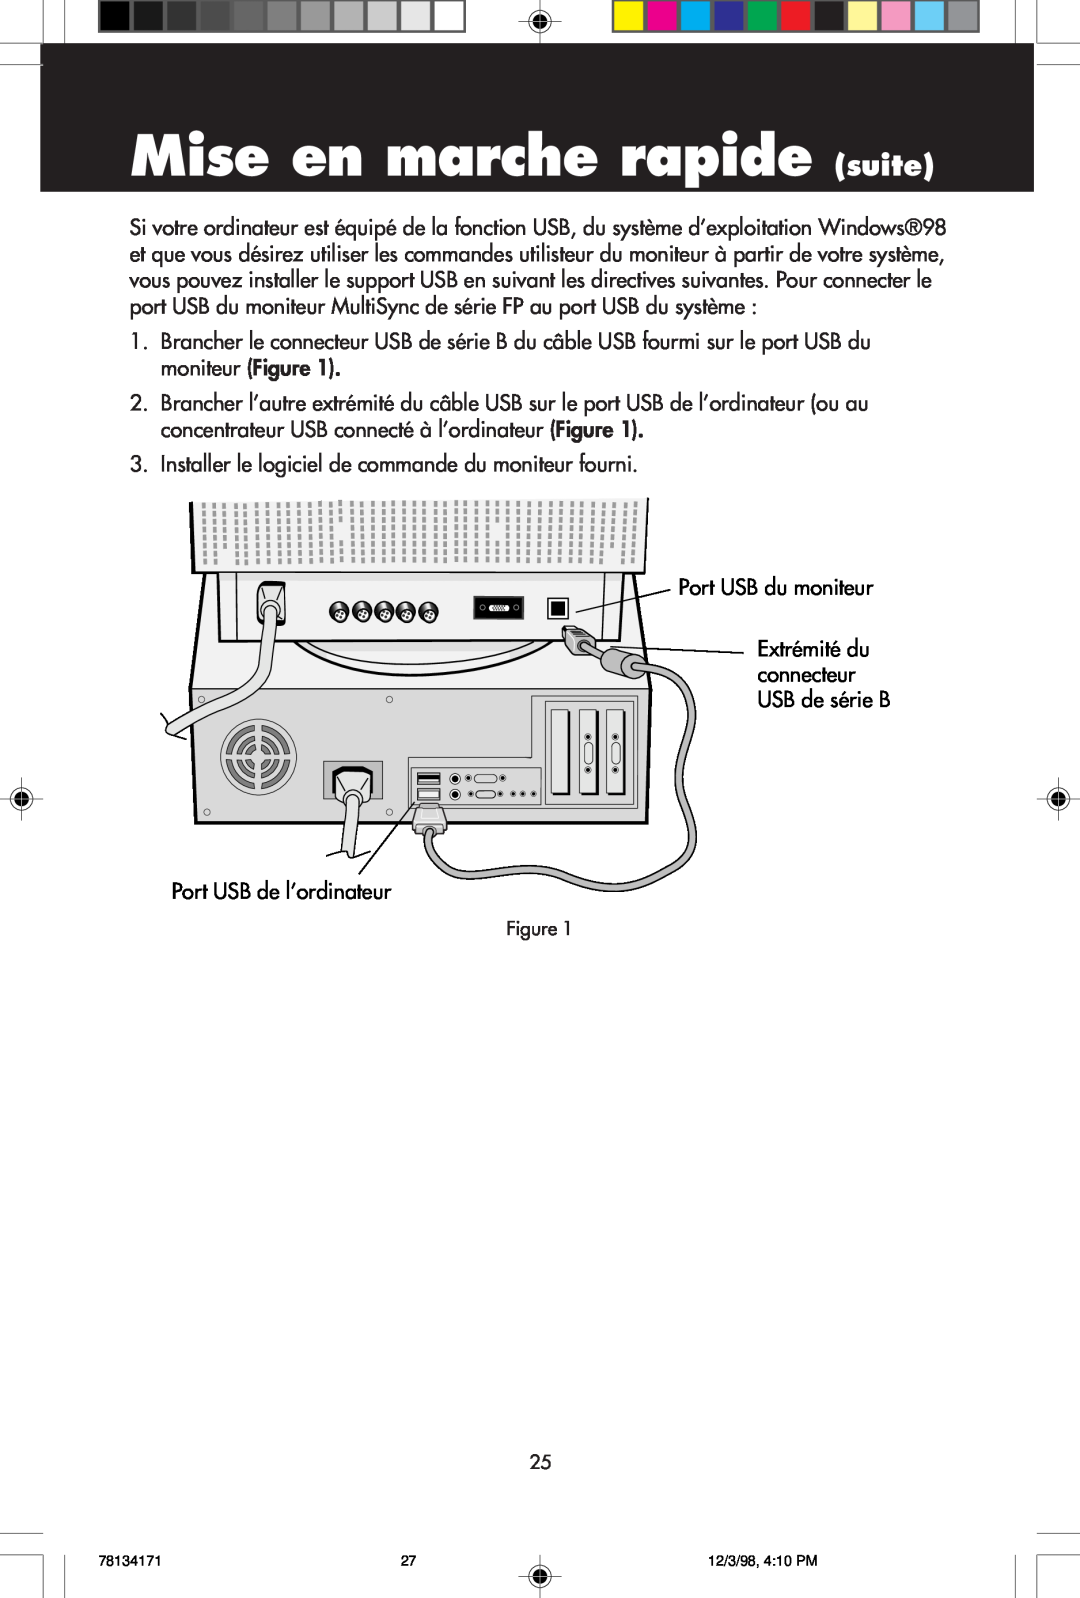 NEC JC-1946UMW, JC-2241UMW user manual Mise en marche rapide suite, Installer le logiciel de commande du moniteur fourni 